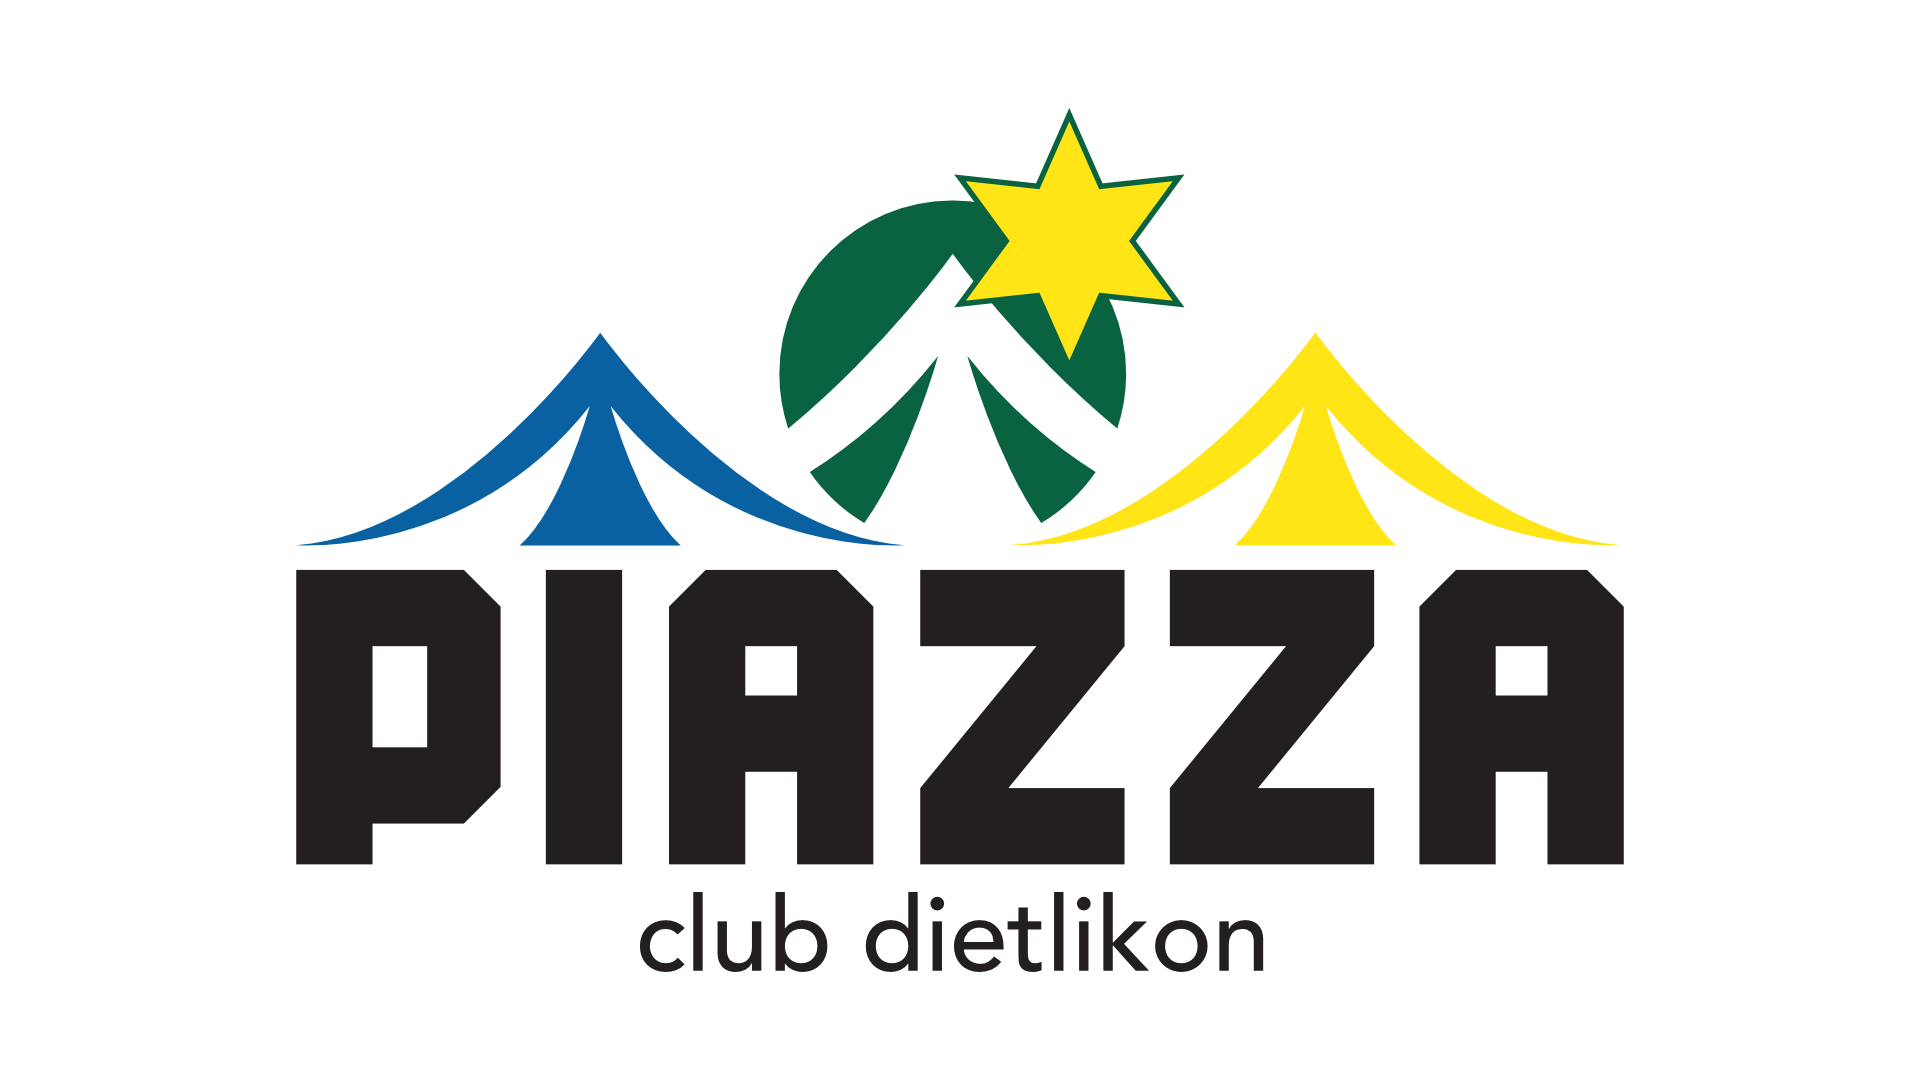 PIAZZA Club Dietlikon